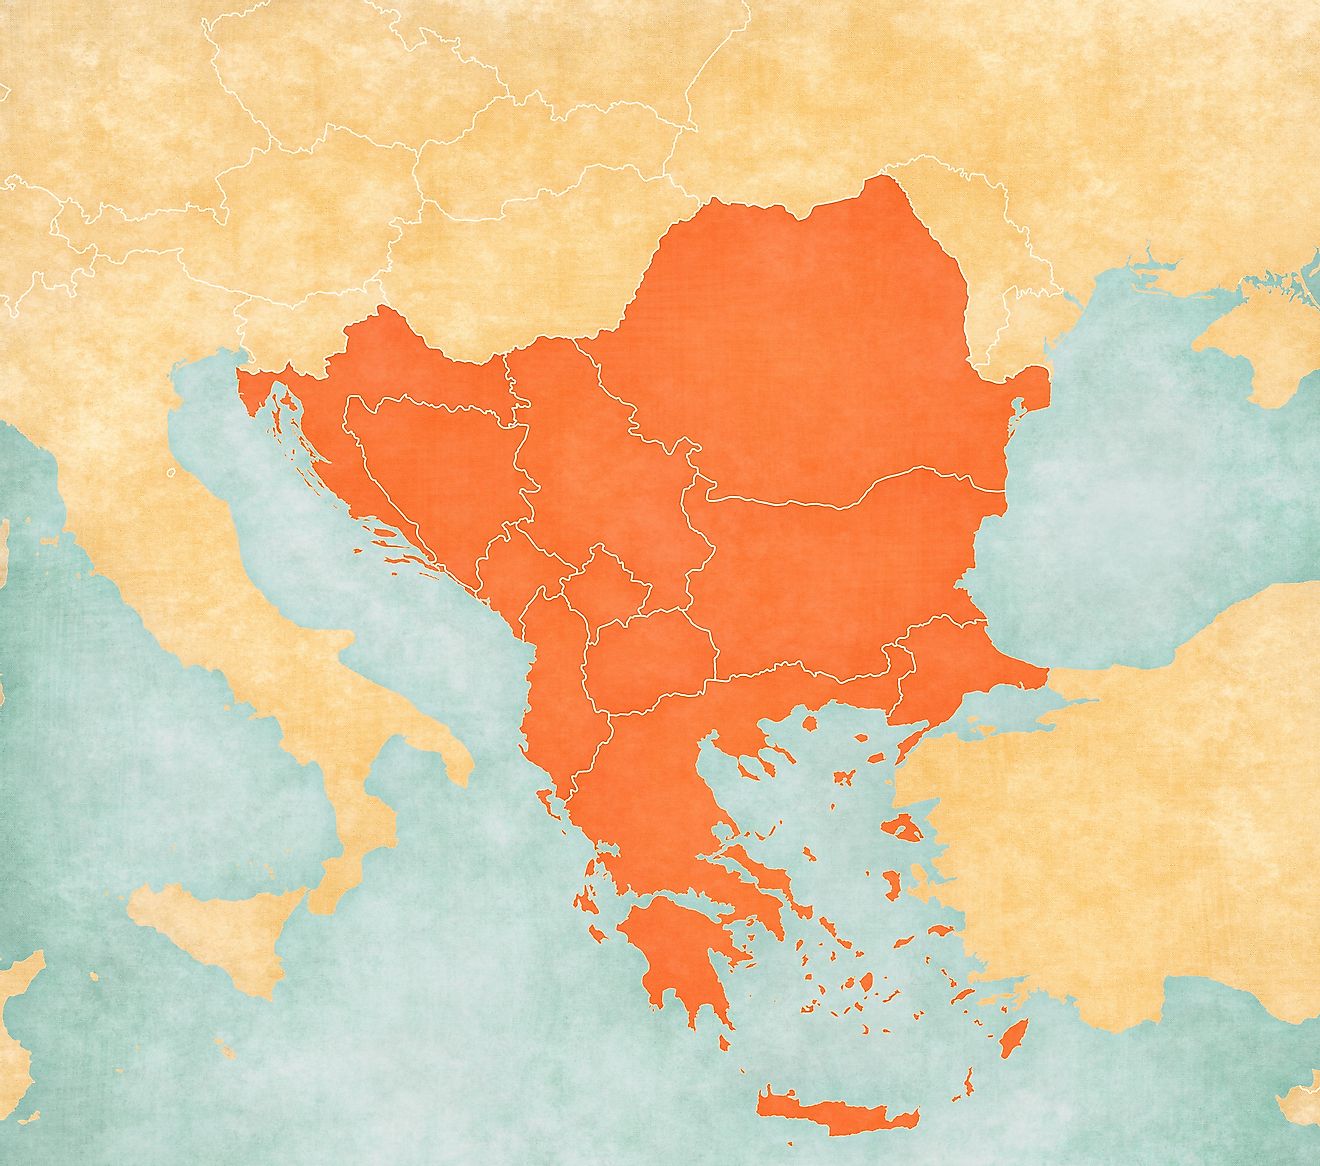 Balkan Peninsula